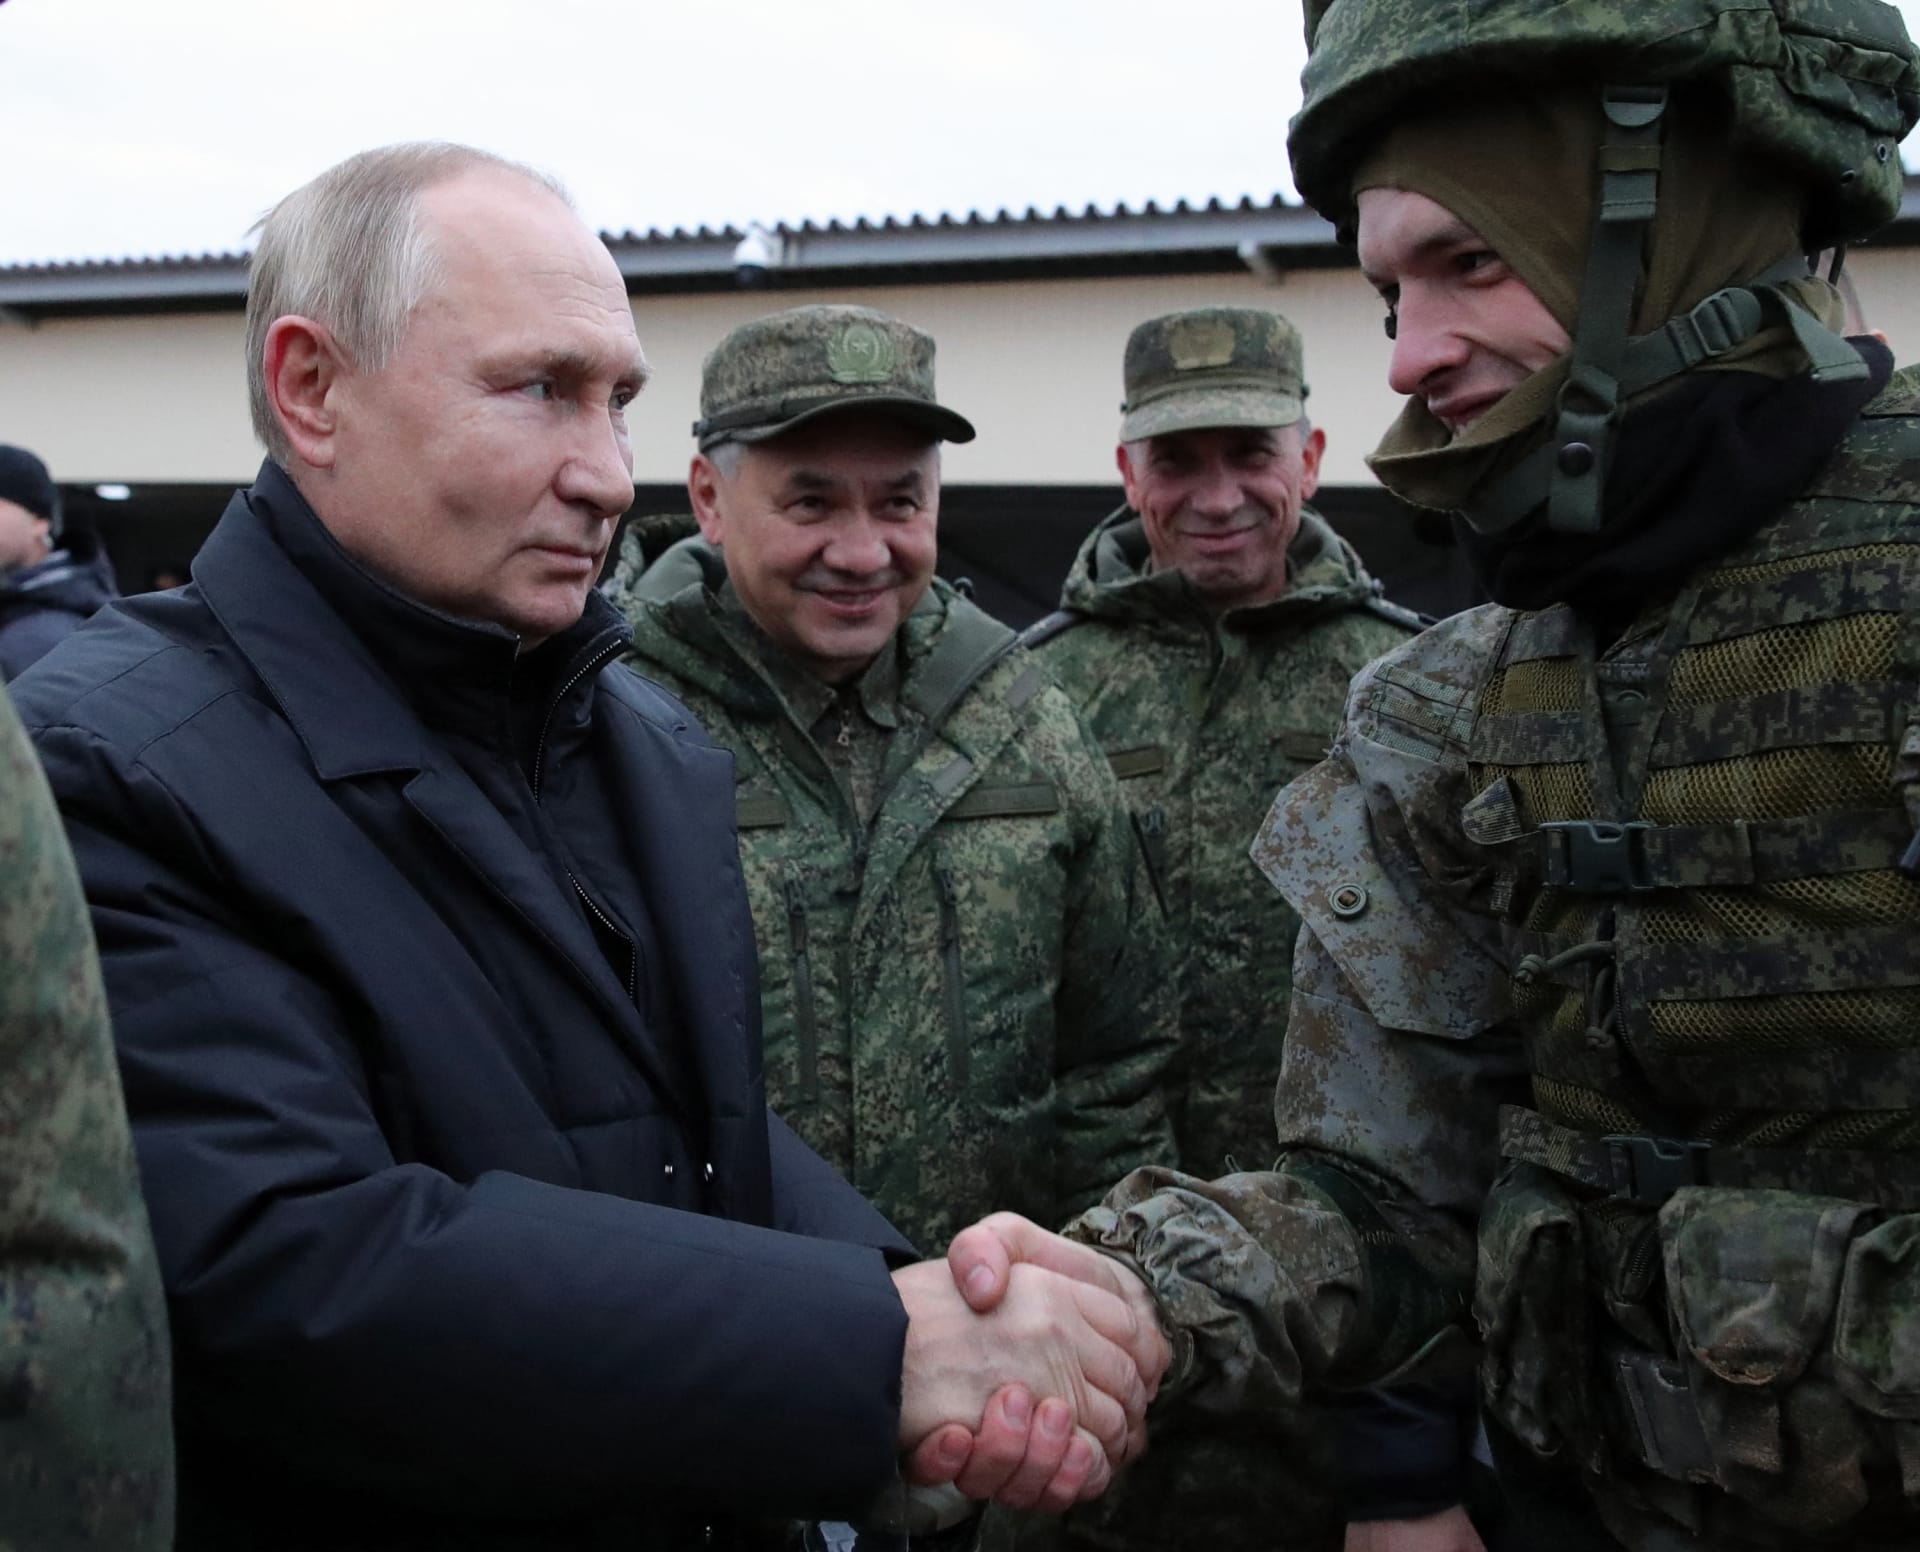 صورة ليوتين ووزير دفاعة بأحد المعسكرات التدريبية الروسية 